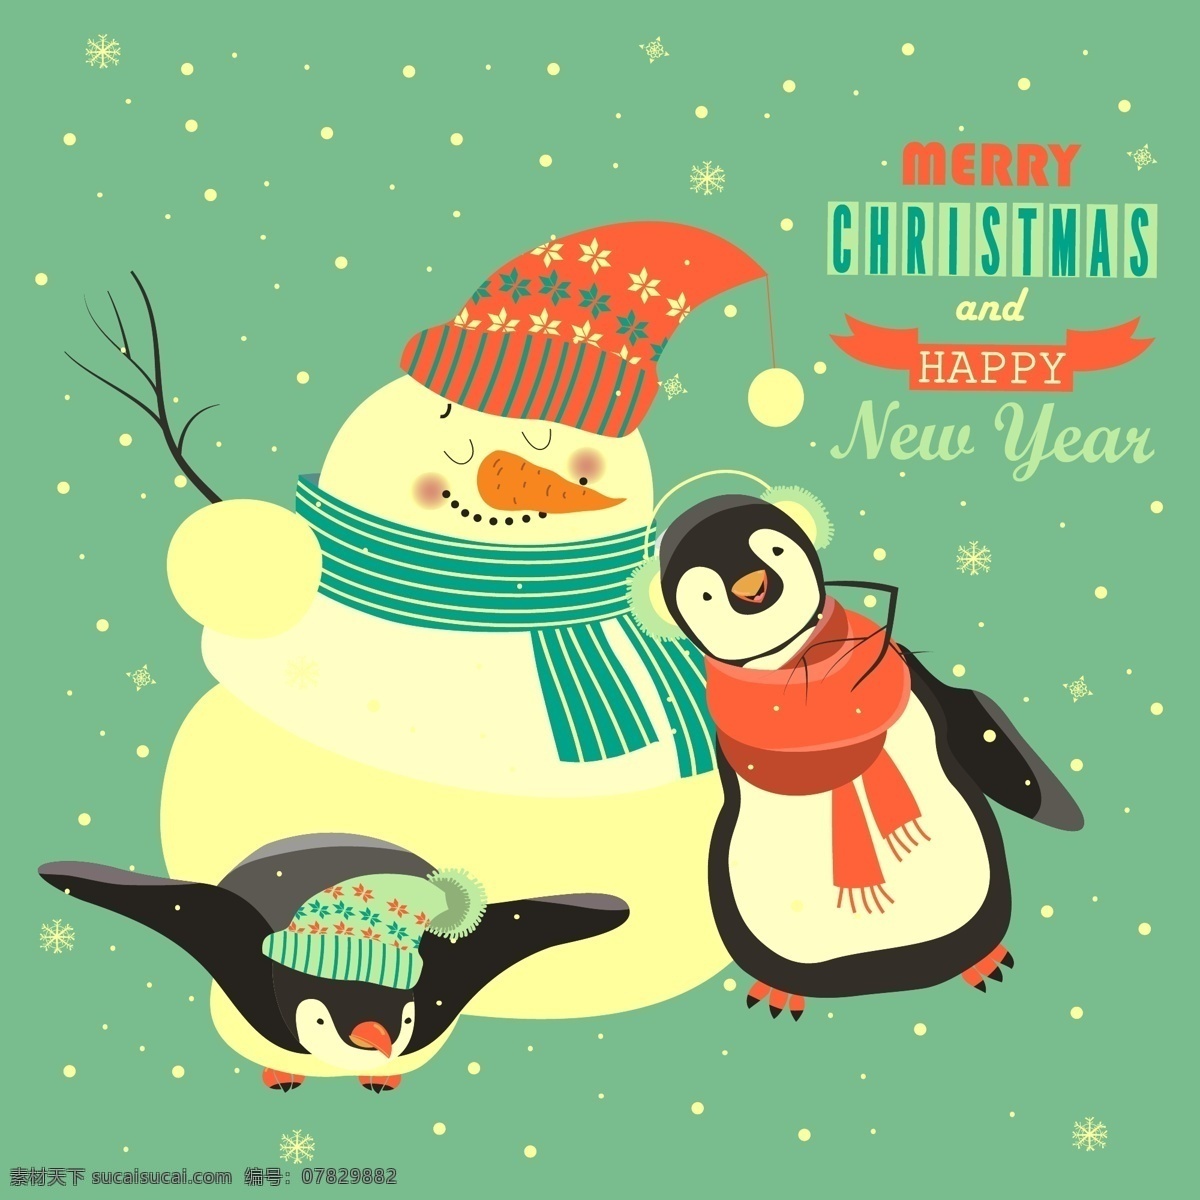 卡通 动物 企鹅 冬季 卡通动物 卡通素材 免抠素材 企鹅素材 矢量插图 下雪 雪人